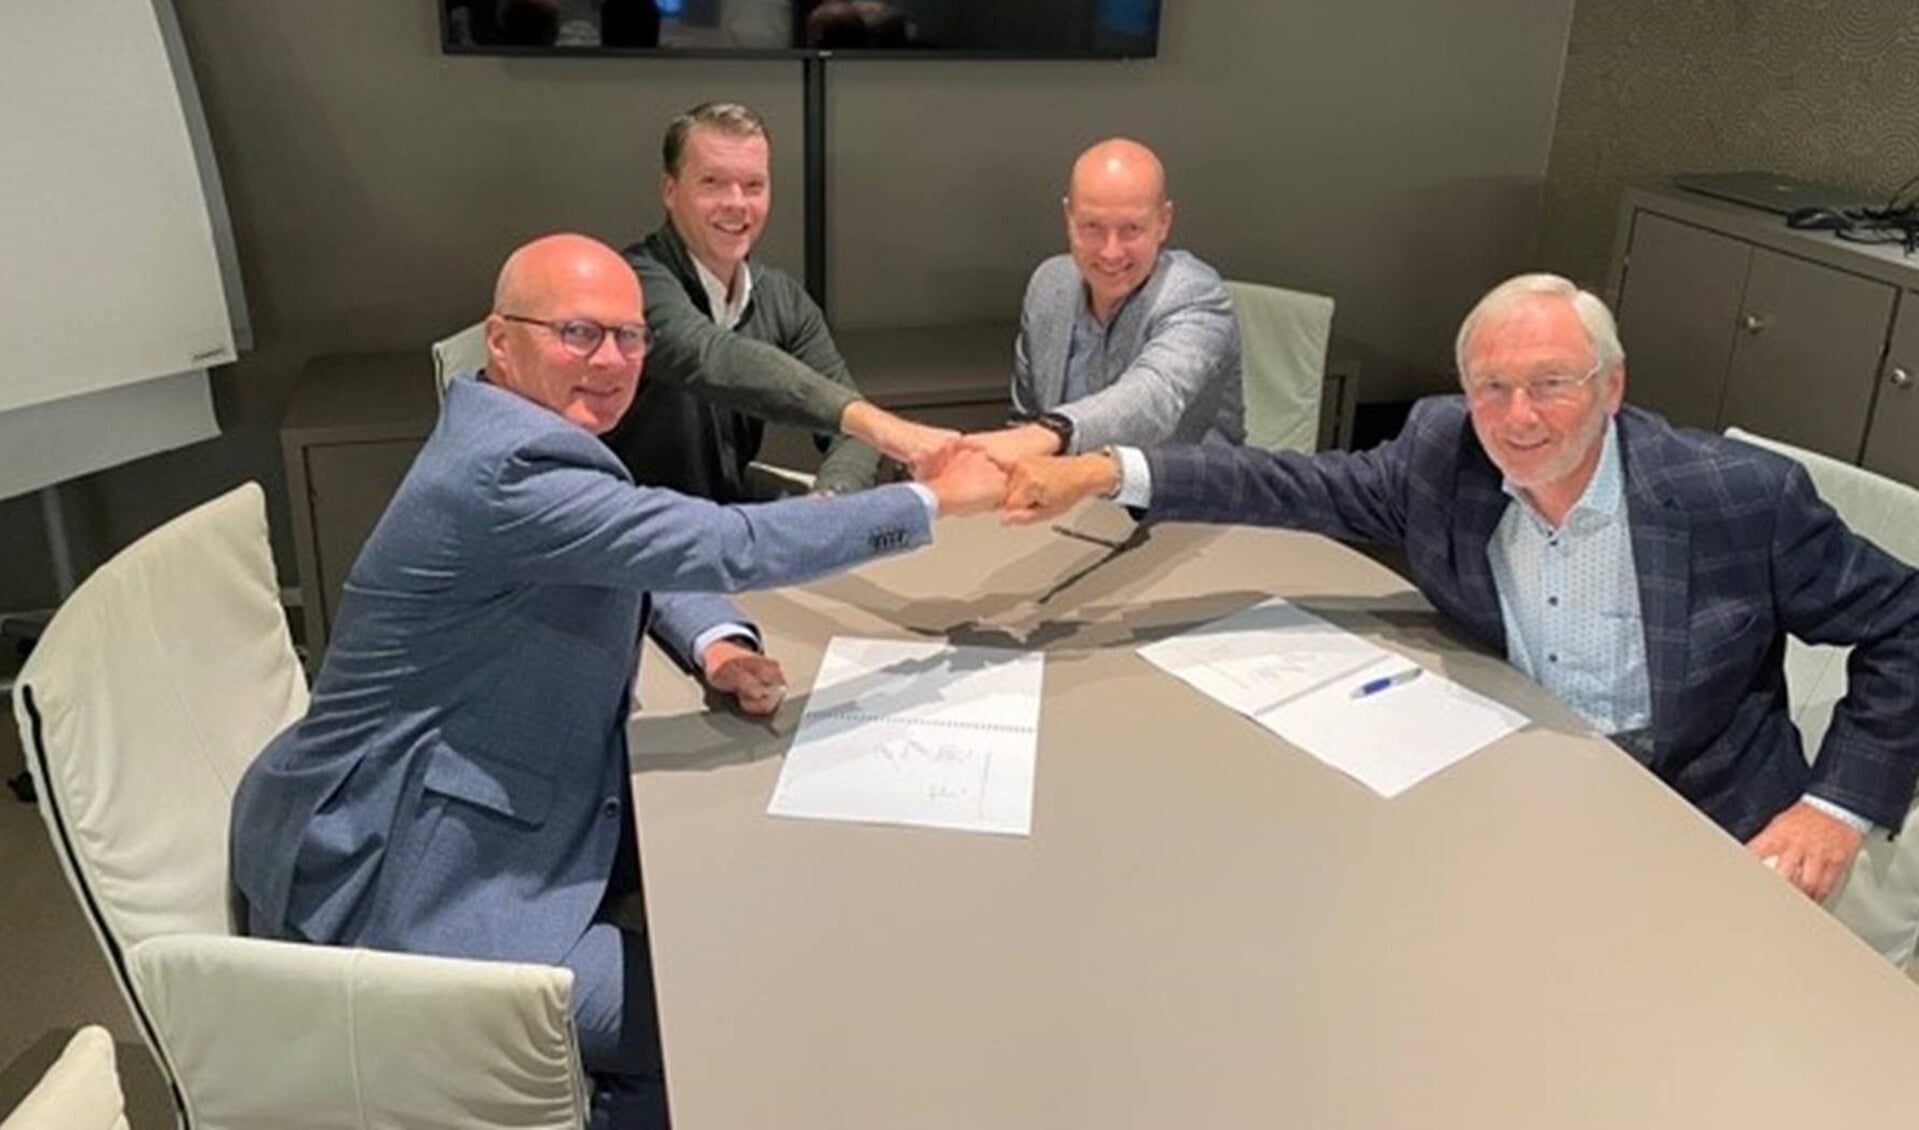 De ondertekening van de koopovereenkomst met v.l.n.r. René Biesheuvel (VOC), Peter Tieleman (VOC), Robin Dijkgraaf (HD) en Teus van Dieren (VOC).